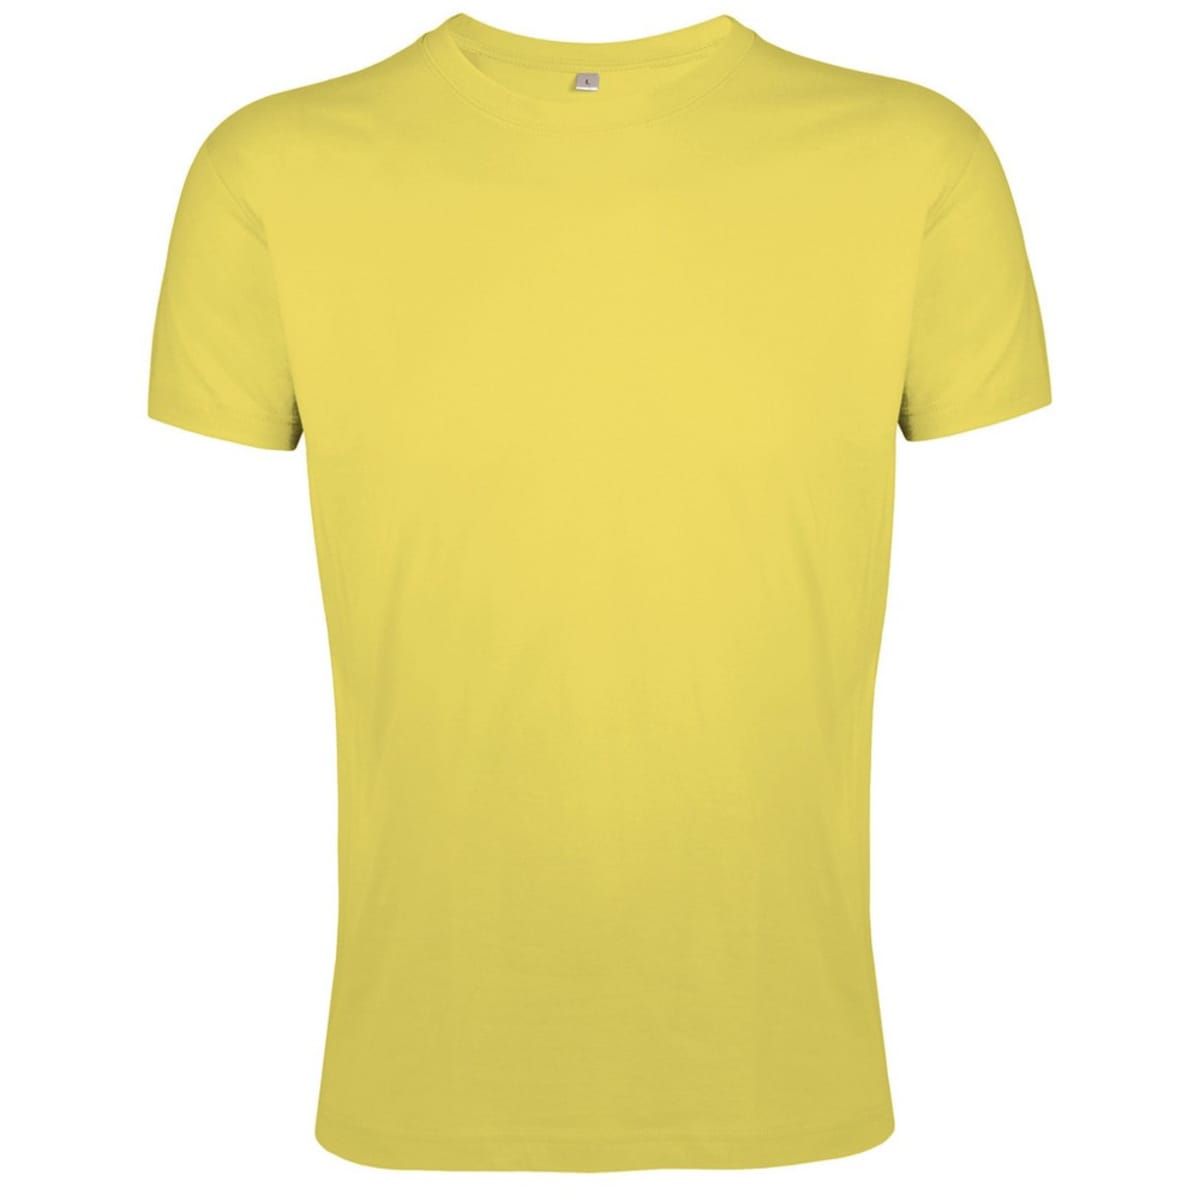 tee shirt jaune